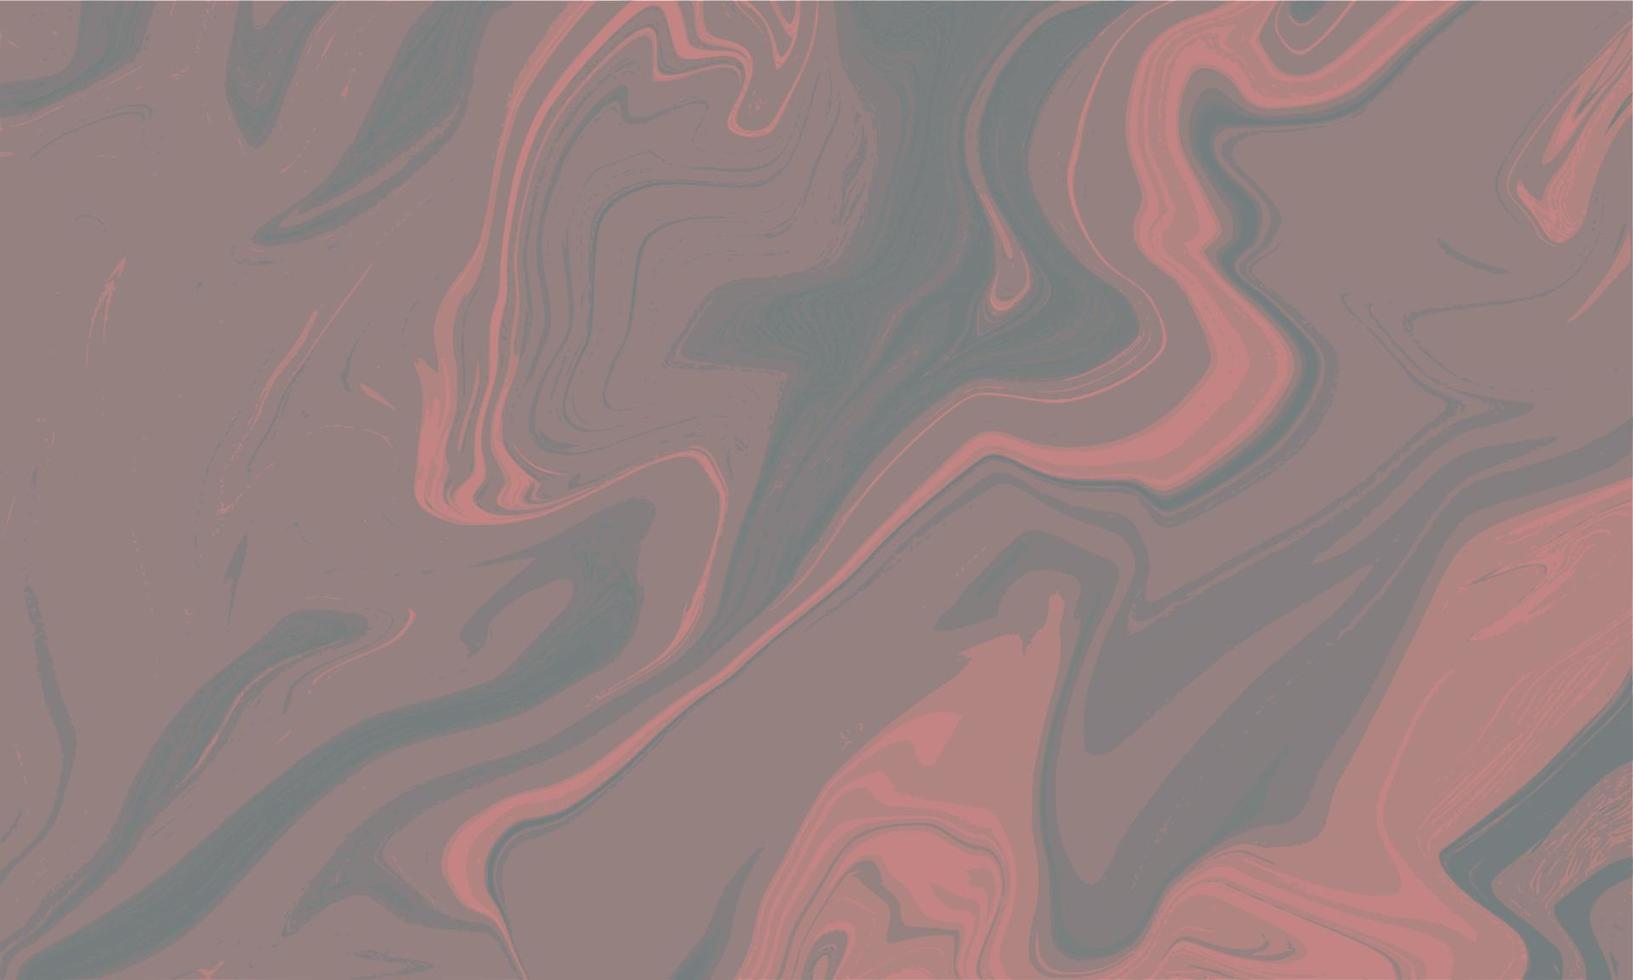 abstracte rode vloeibare marmeren achtergrond vector